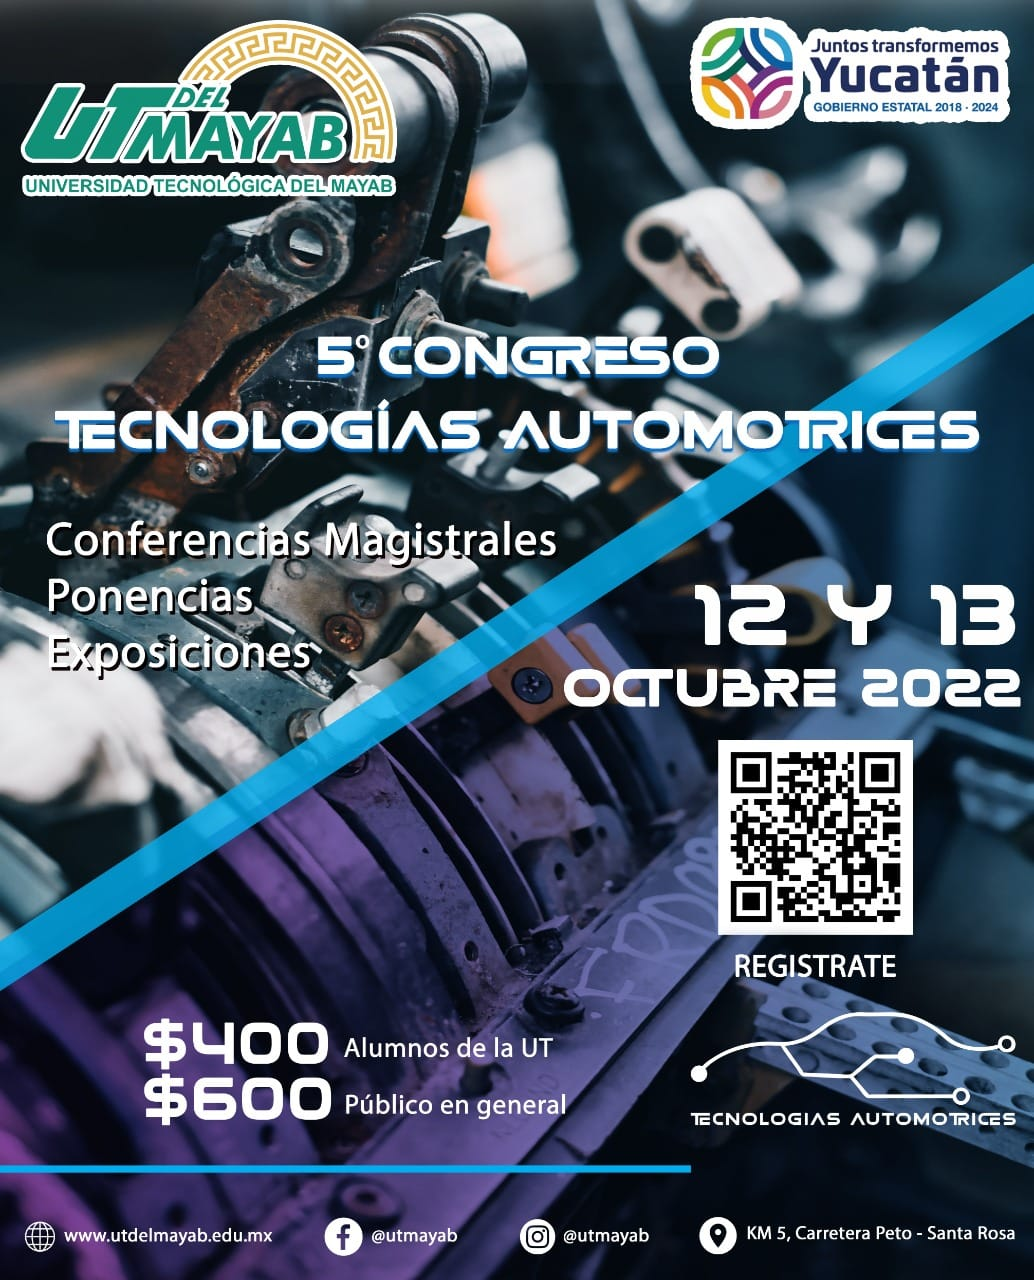 La Universidad Tecnológica del Mayab invita a su 5º Congreso de Mecánica Automotriz “Tecnologías Automotrices”